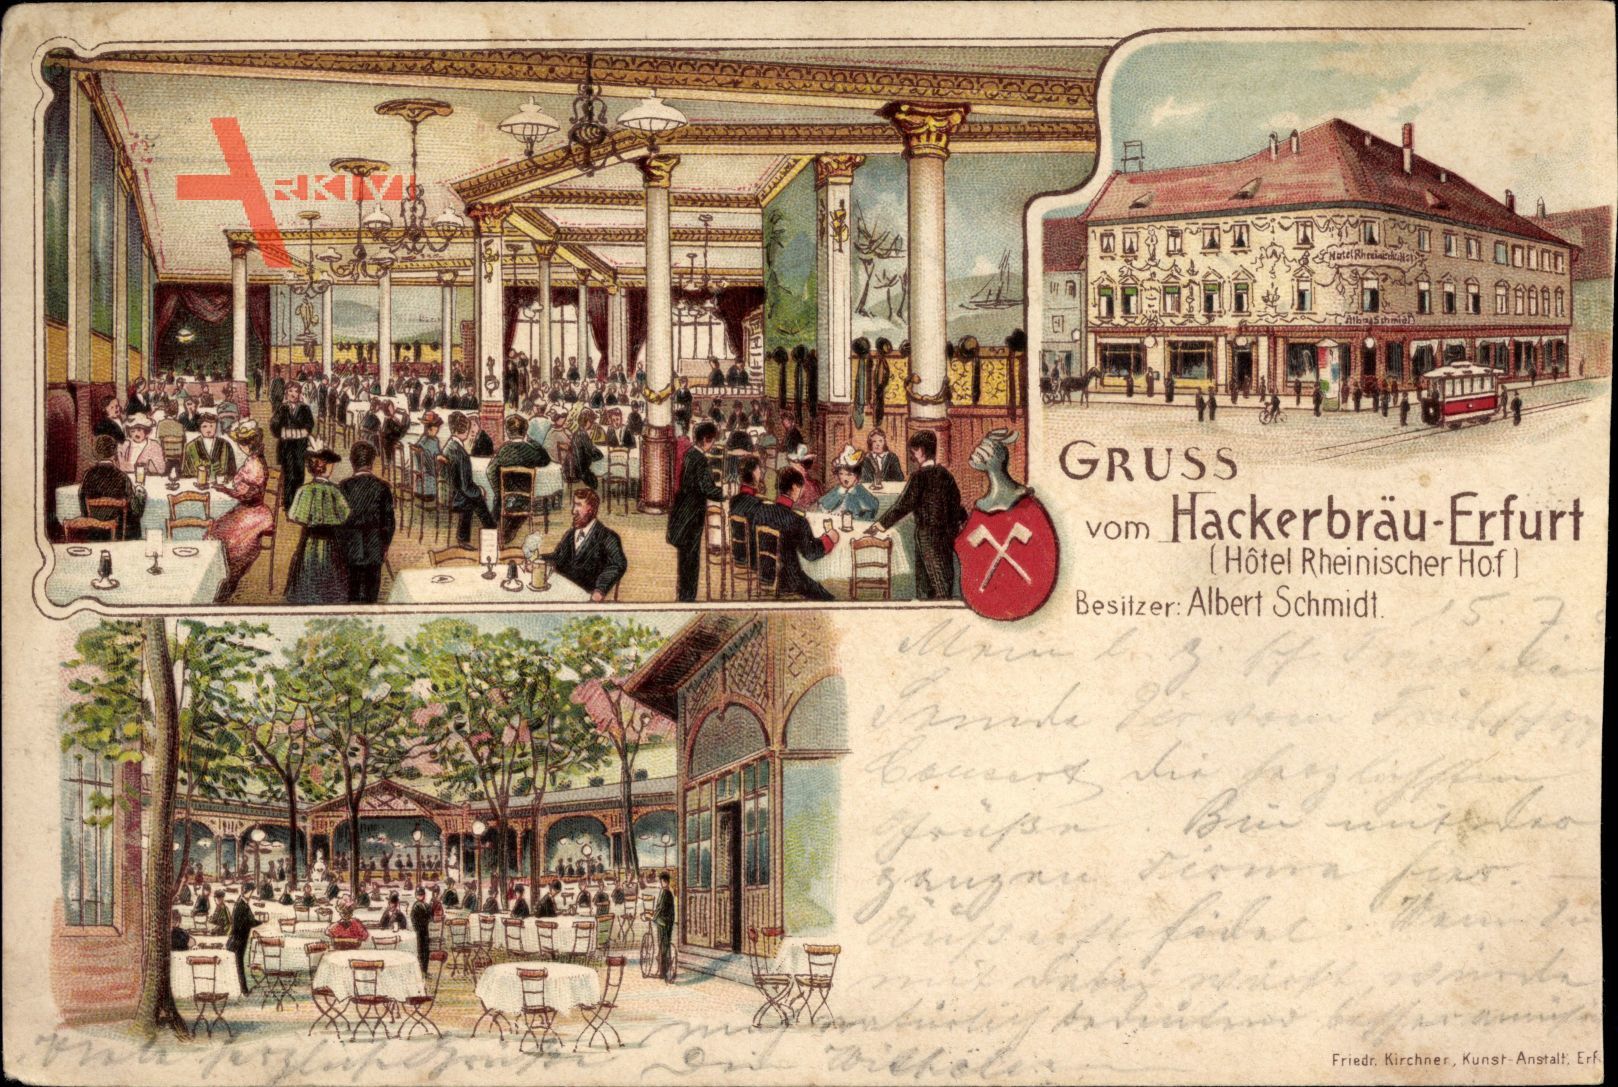 Erfurt in Thüringen, Hackerbräu, Hotel Rheinischer Hof, Albert Schmidt